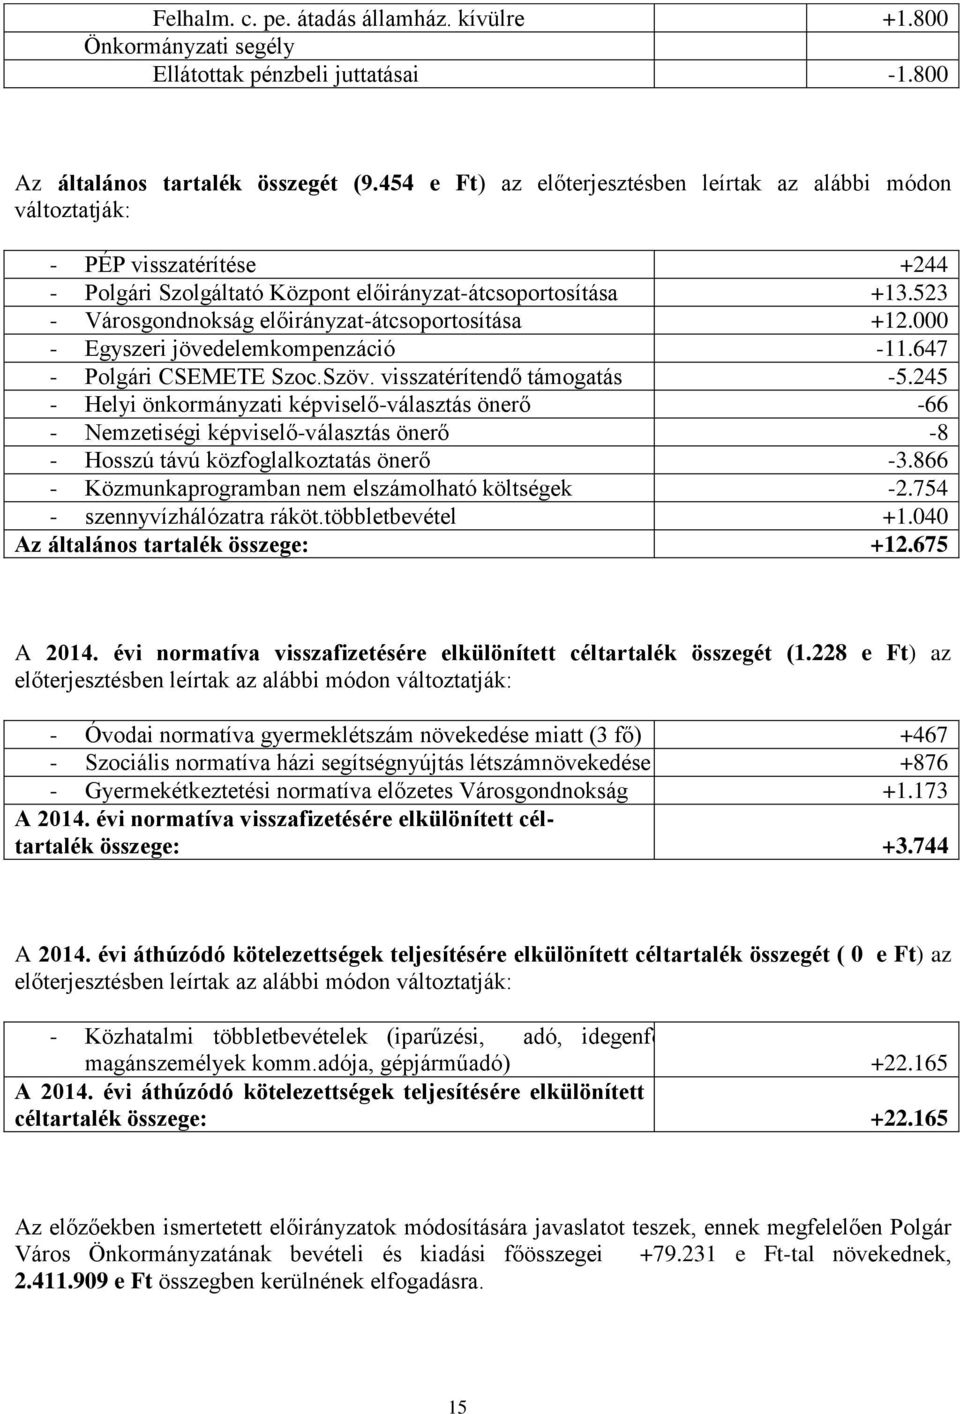 523 - Városgondnokság előirányzat-átcsoportosítása +12.000 - Egyszeri jövedelemkompenzáció -11.647 - Polgári CSEMETE Szoc.Szöv. visszatérítendő támogatás -5.